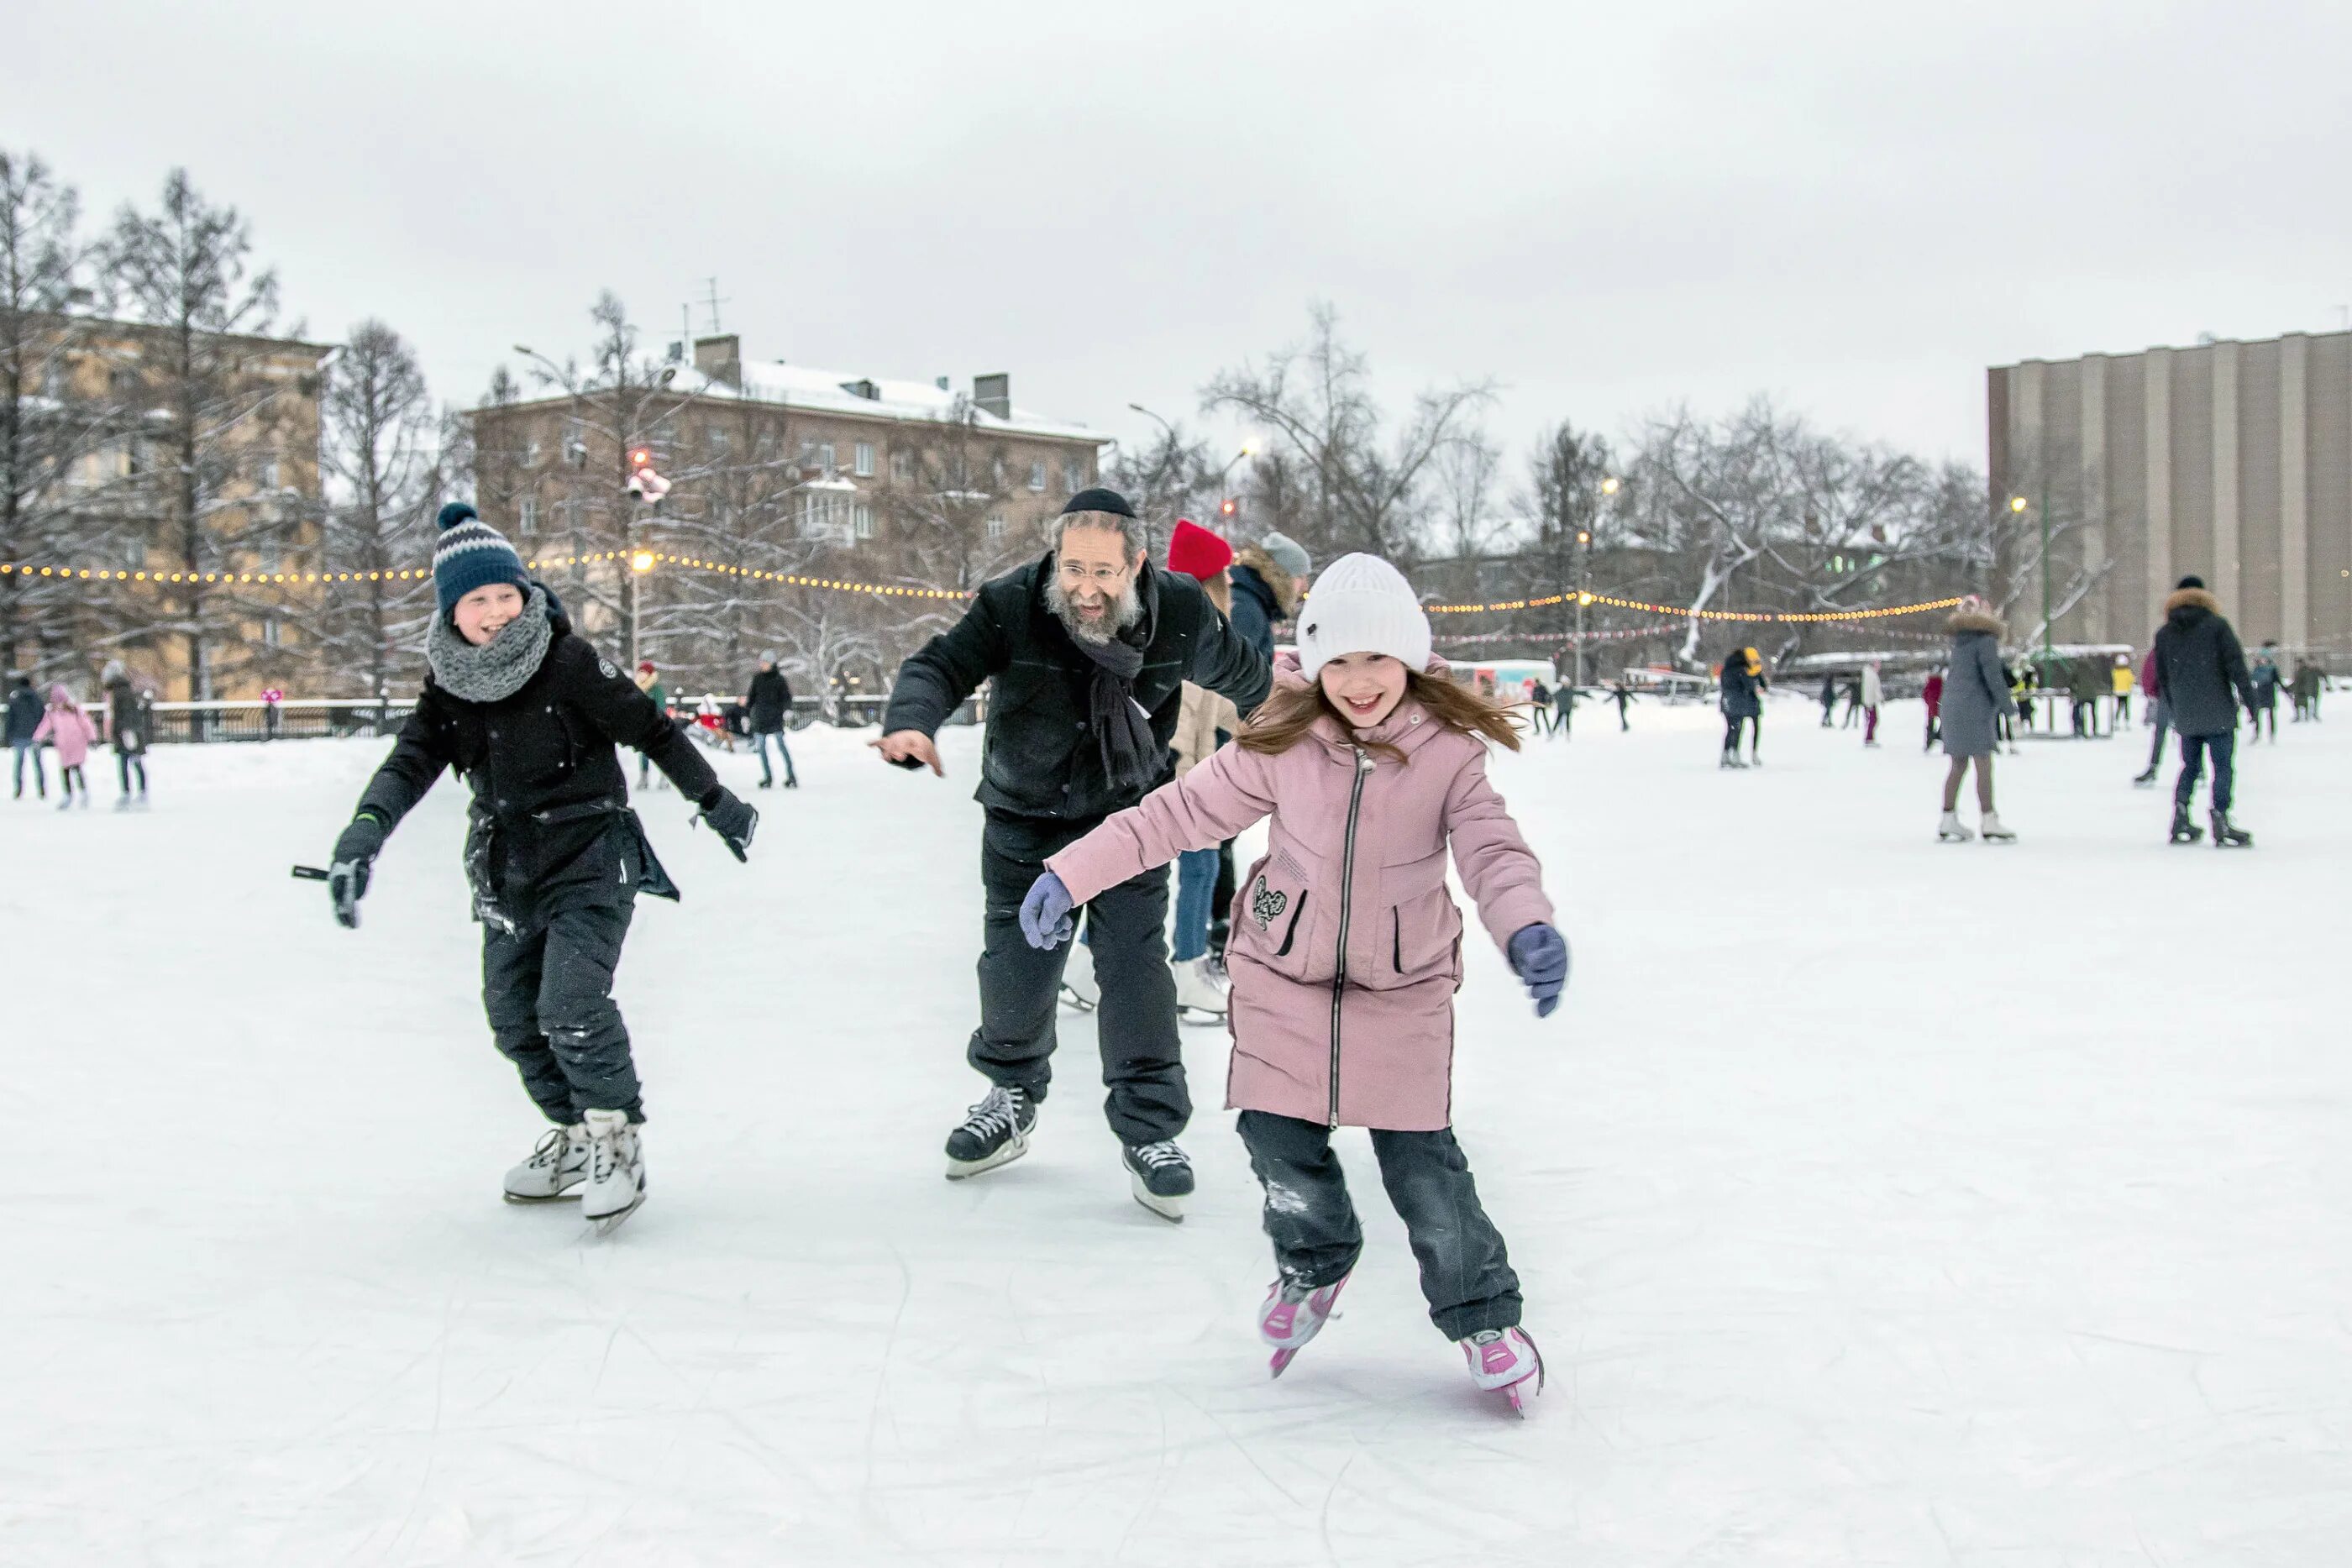 Каток дети катаются. Катание на коньках. Дети катаются на коньках. Кататься на коньках зимой. Катание на коньках дети.